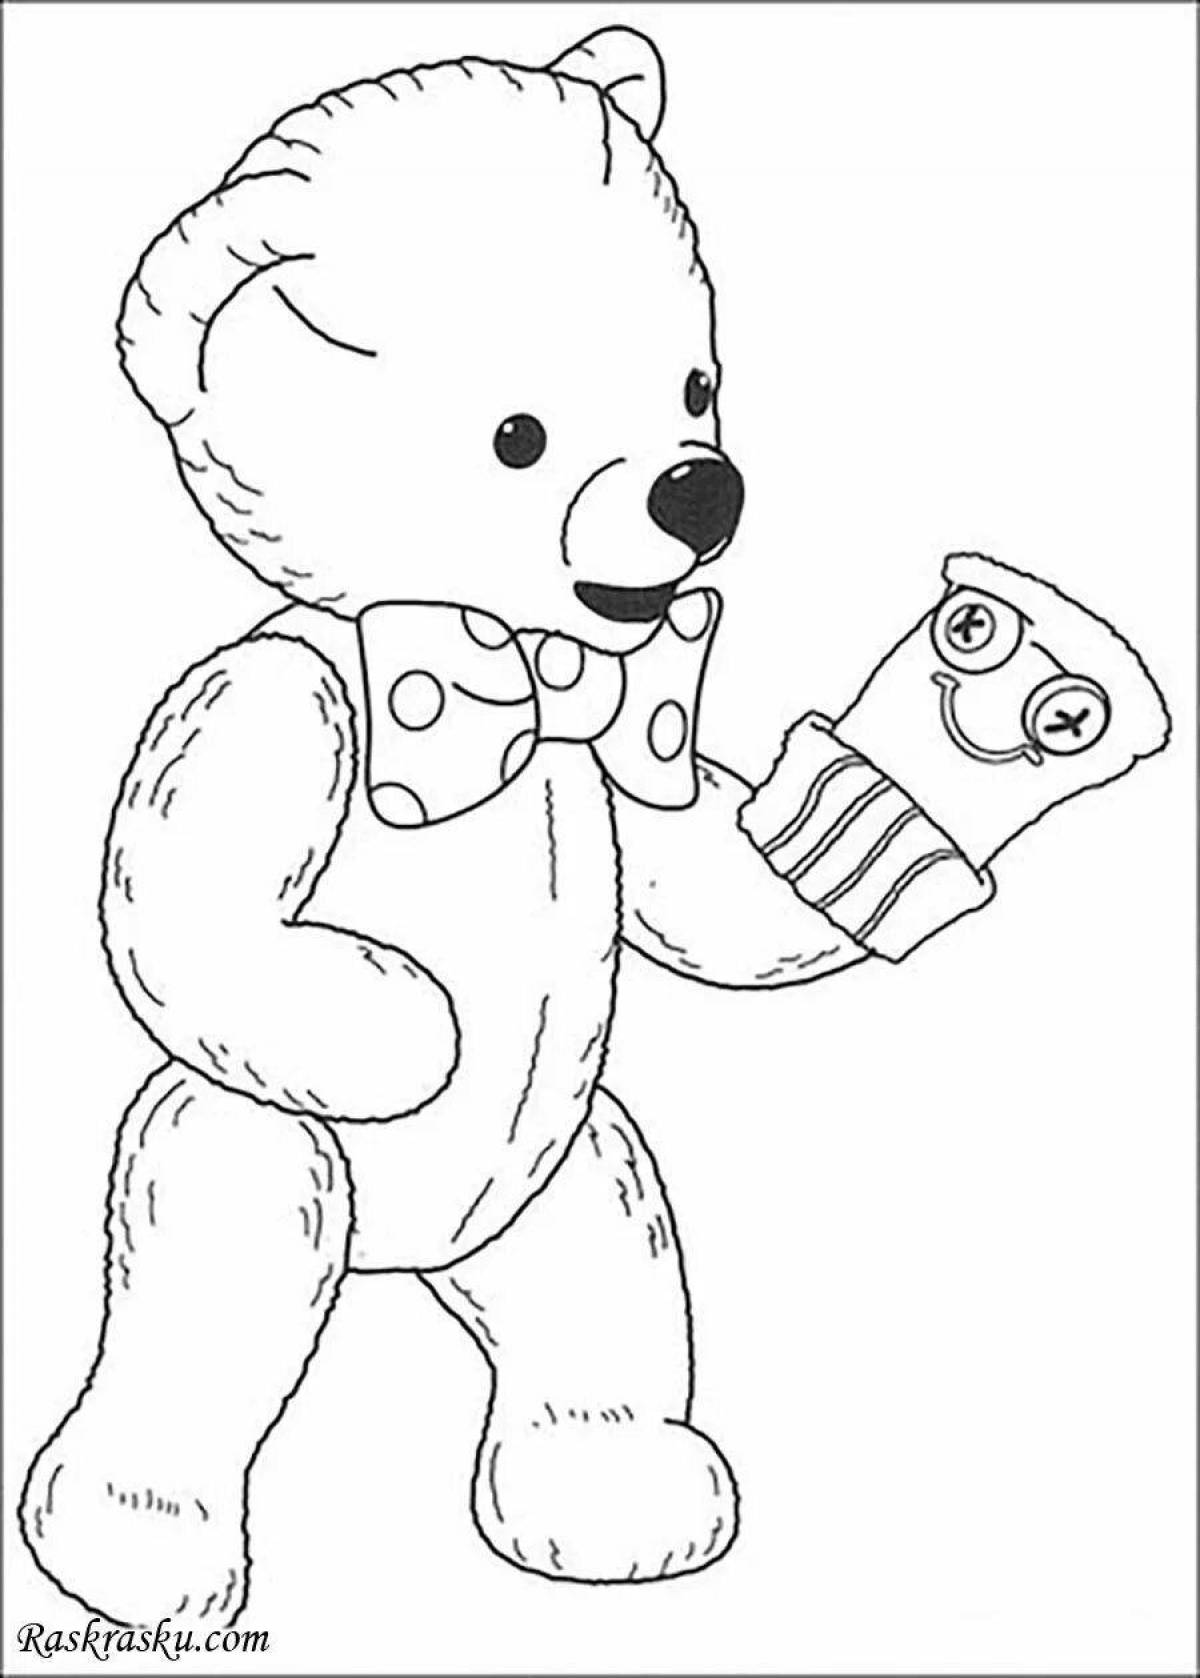 Teddy bear coloring book